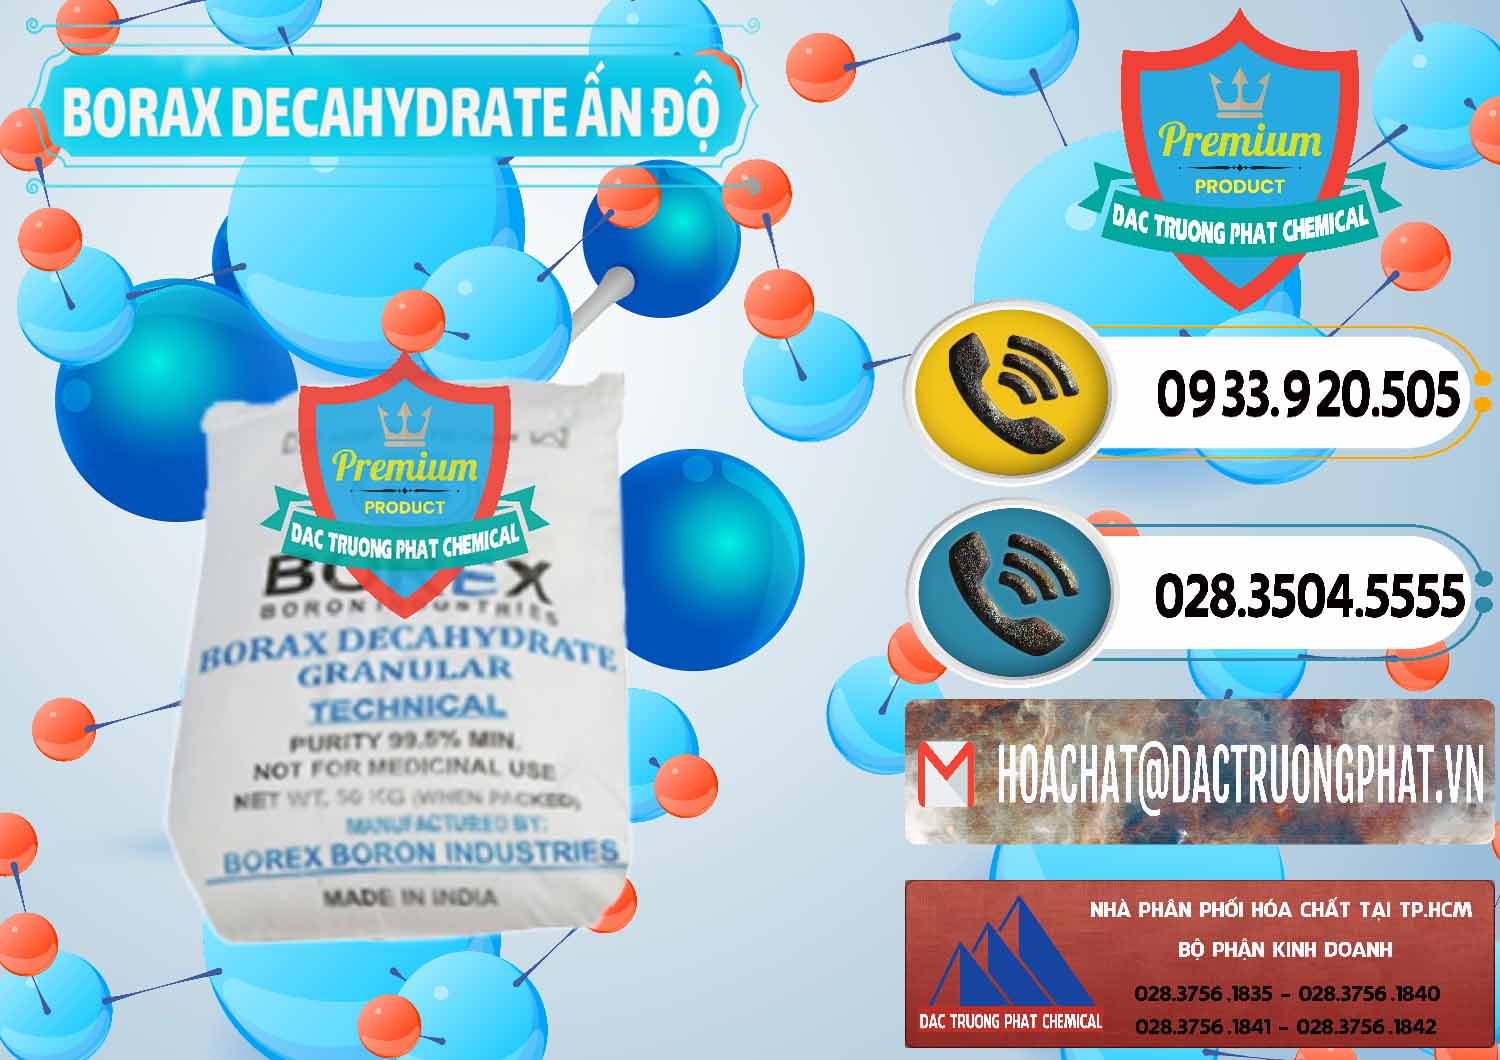 Nơi bán - phân phối Borax Decahydrate Ấn Độ India - 0449 - Công ty chuyên bán & cung cấp hóa chất tại TP.HCM - hoachatdetnhuom.vn